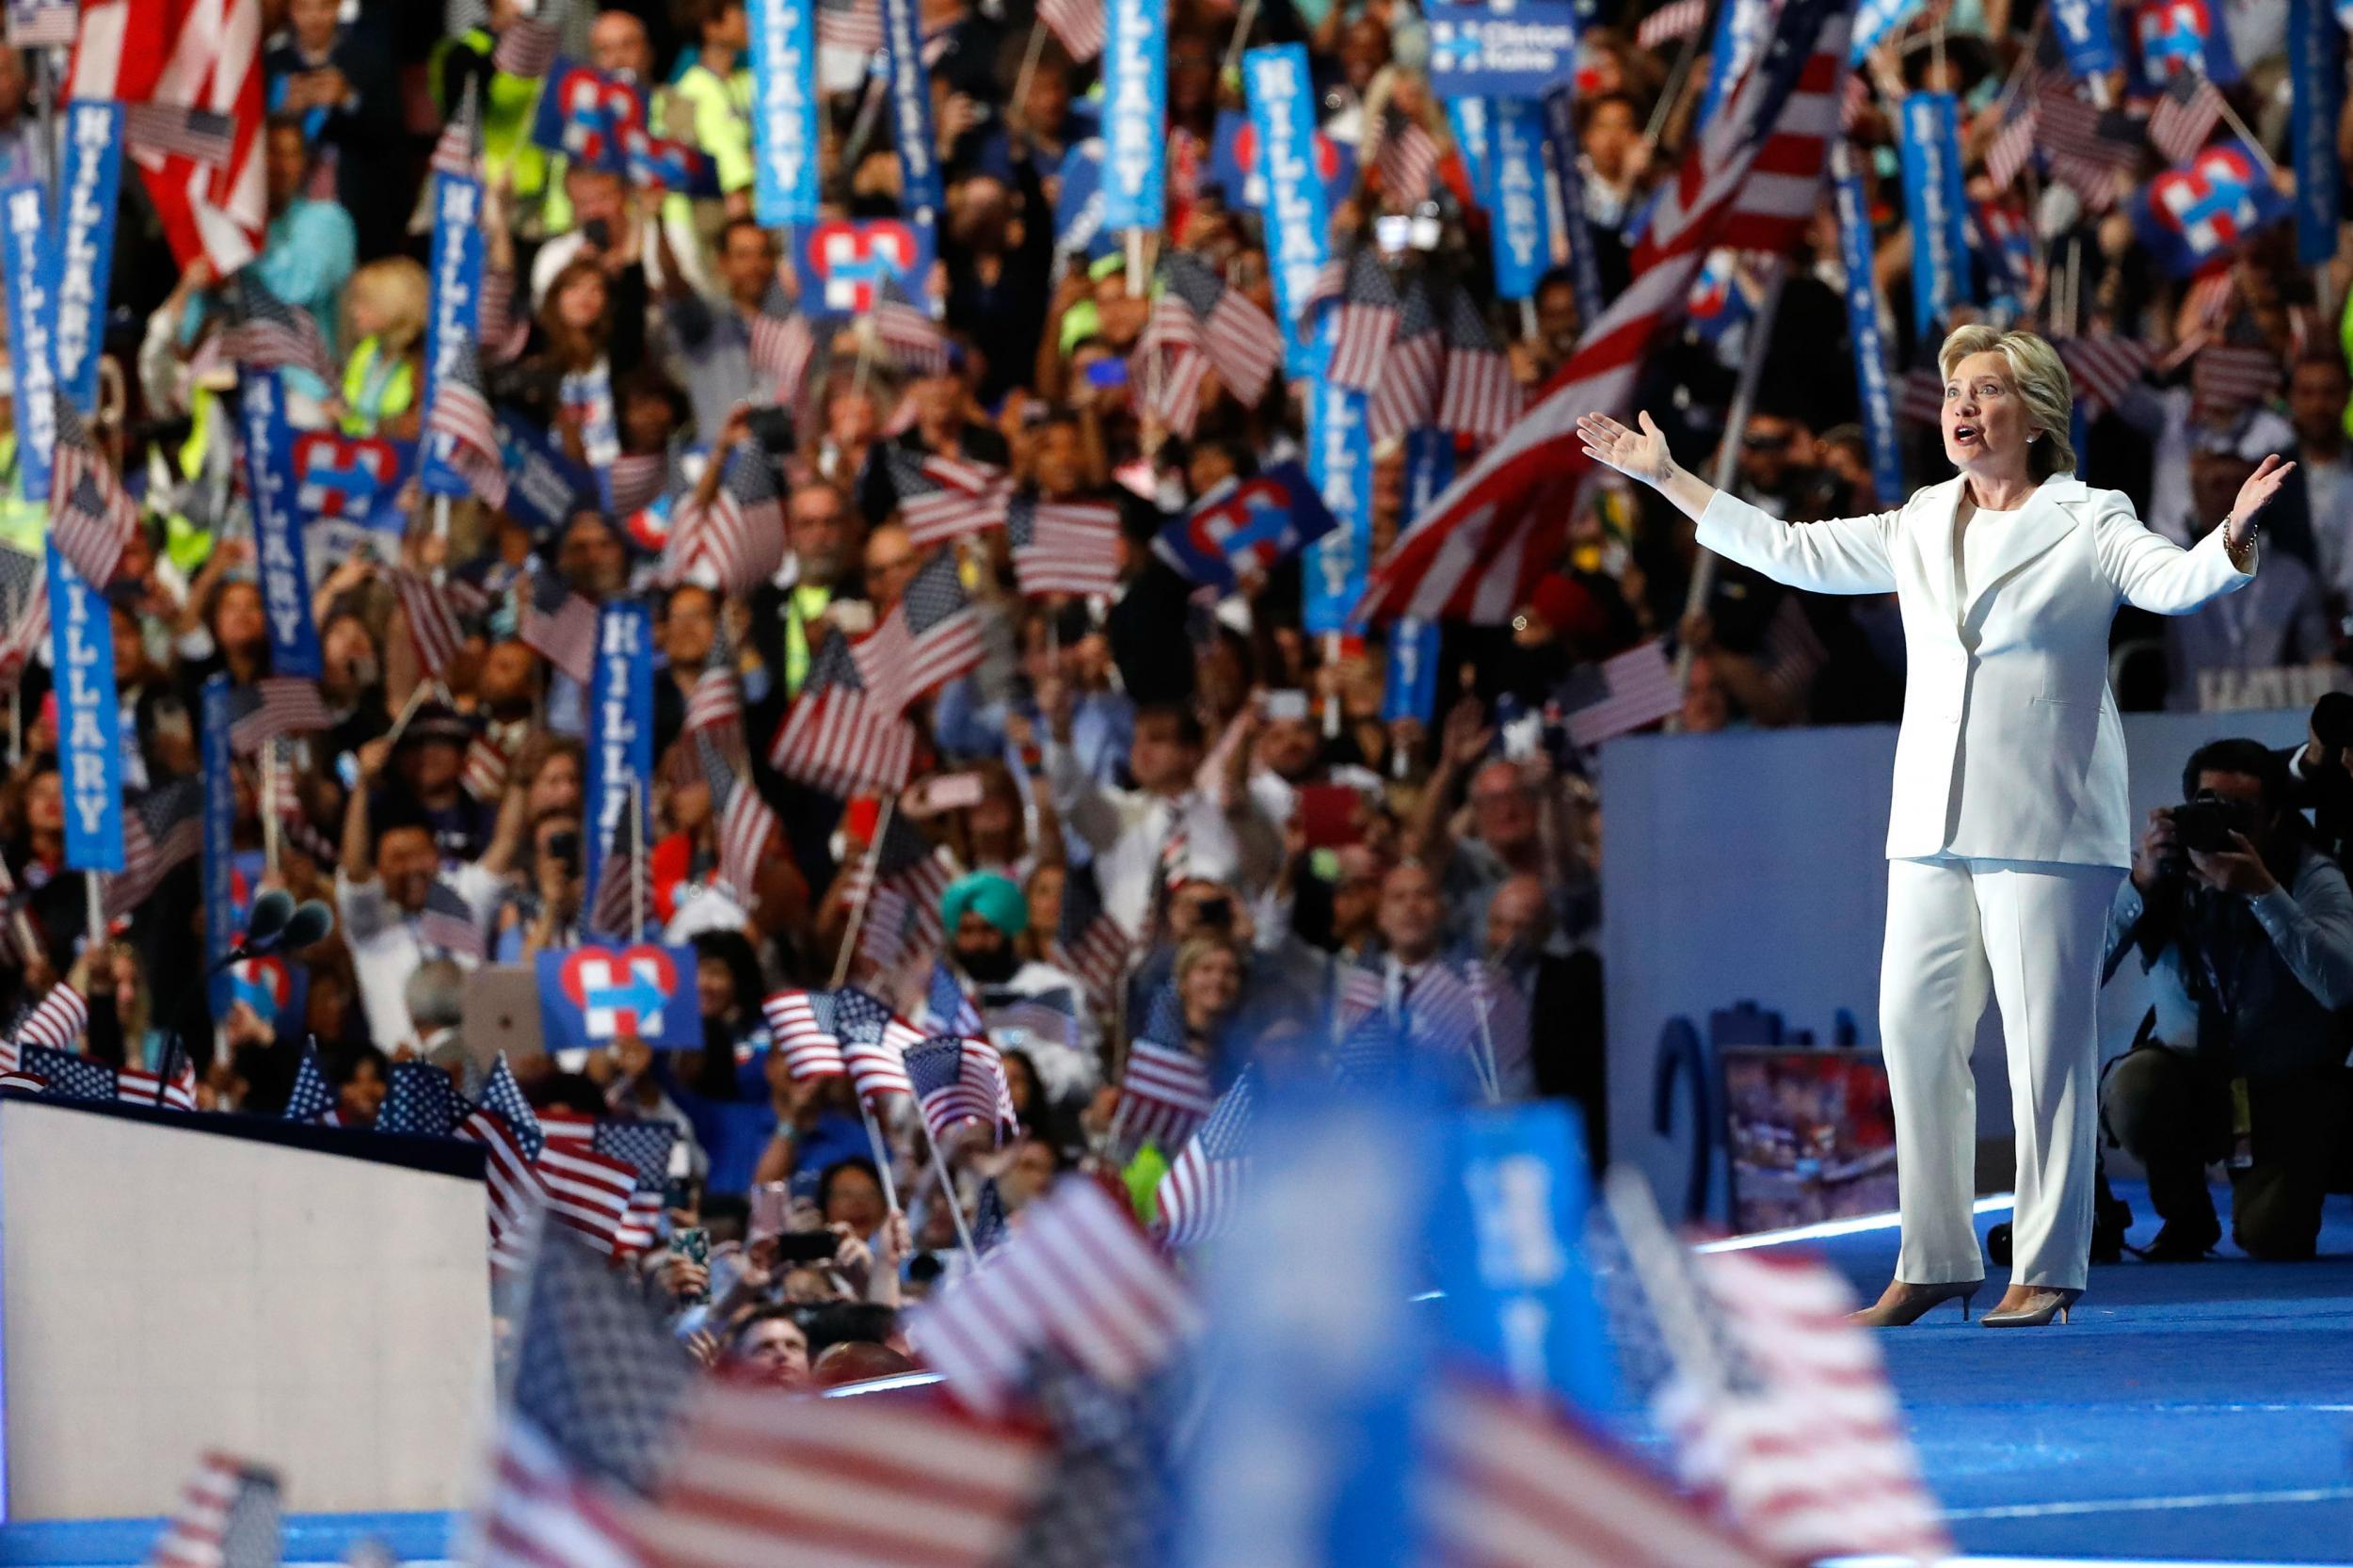 &#13;
Her moment arrives: Hillary greets delegates in Philadelphia &#13;